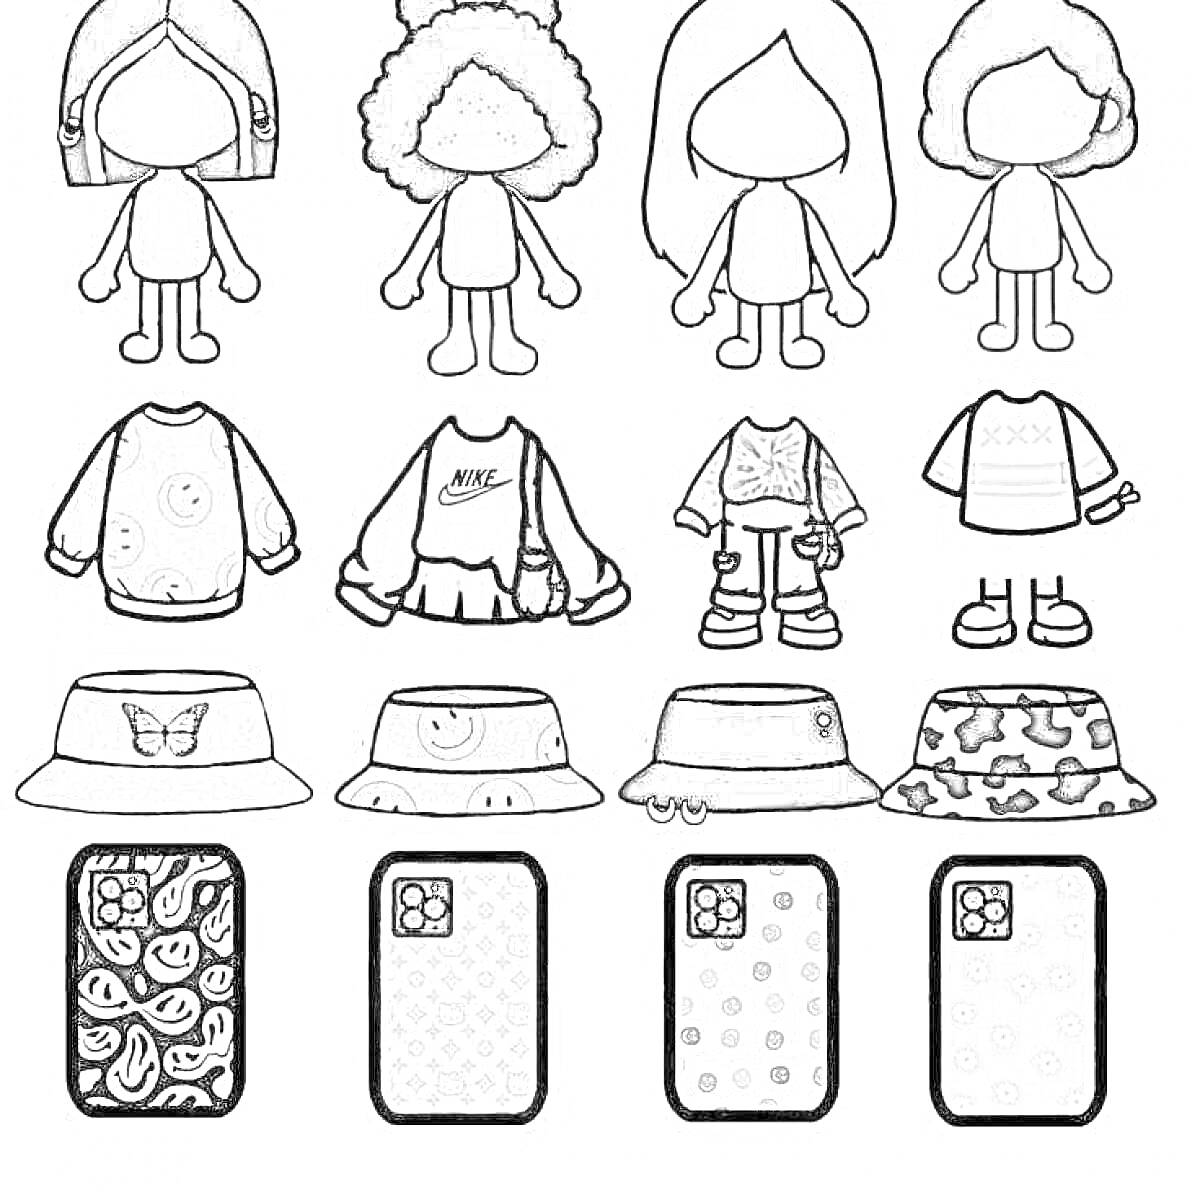 Раскраска Персонажи тока бока с одеждой (свитера, толстовка, футболка), панамами и чехлами для телефонов с узорами